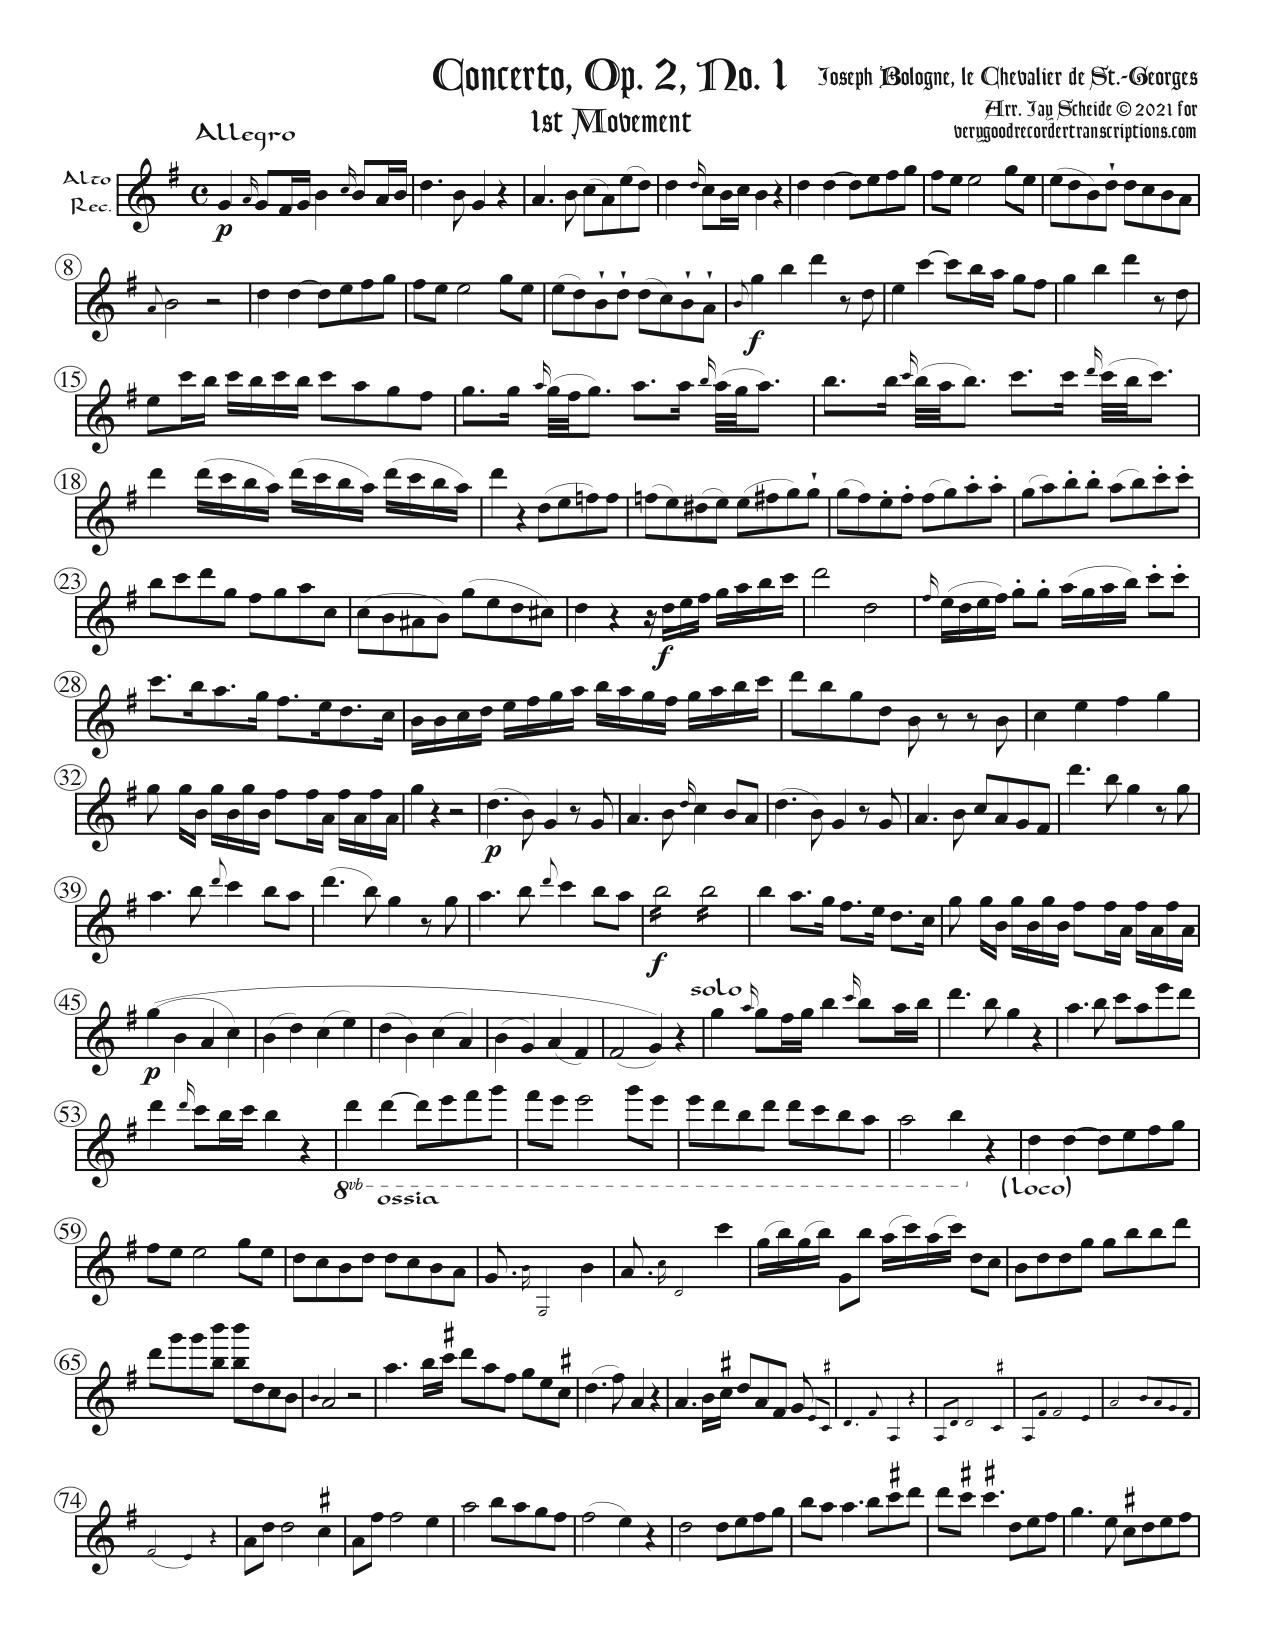 Concerto, Op. 2, No. 1